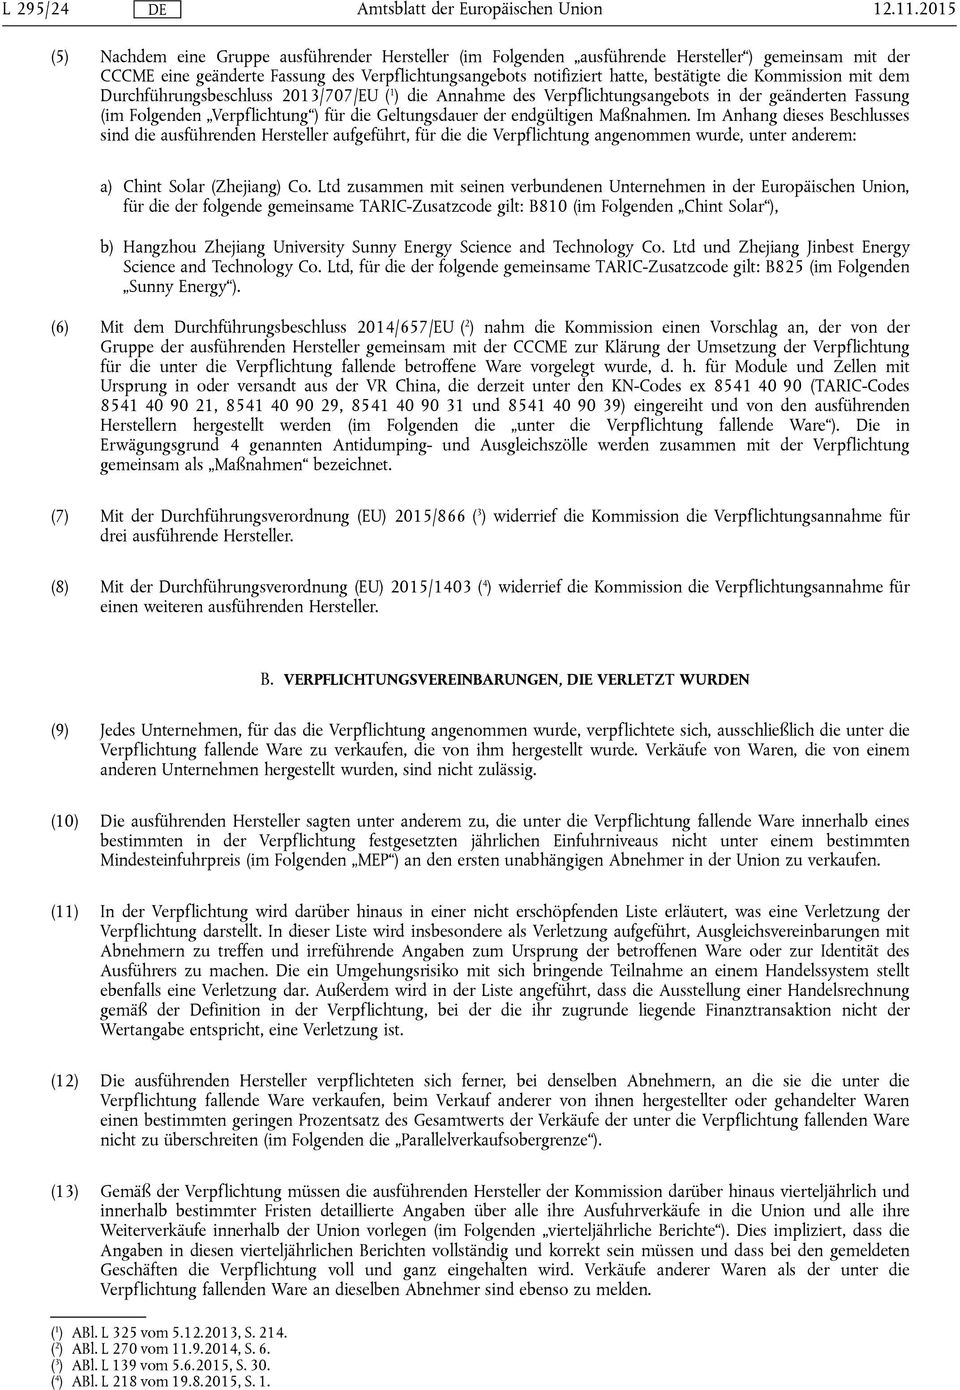 Kommission mit dem Durchführungsbeschluss 2013/707/EU ( 1 ) die Annahme des Verpflichtungsangebots in der geänderten Fassung (im Folgenden Verpflichtung ) für die Geltungsdauer der endgültigen